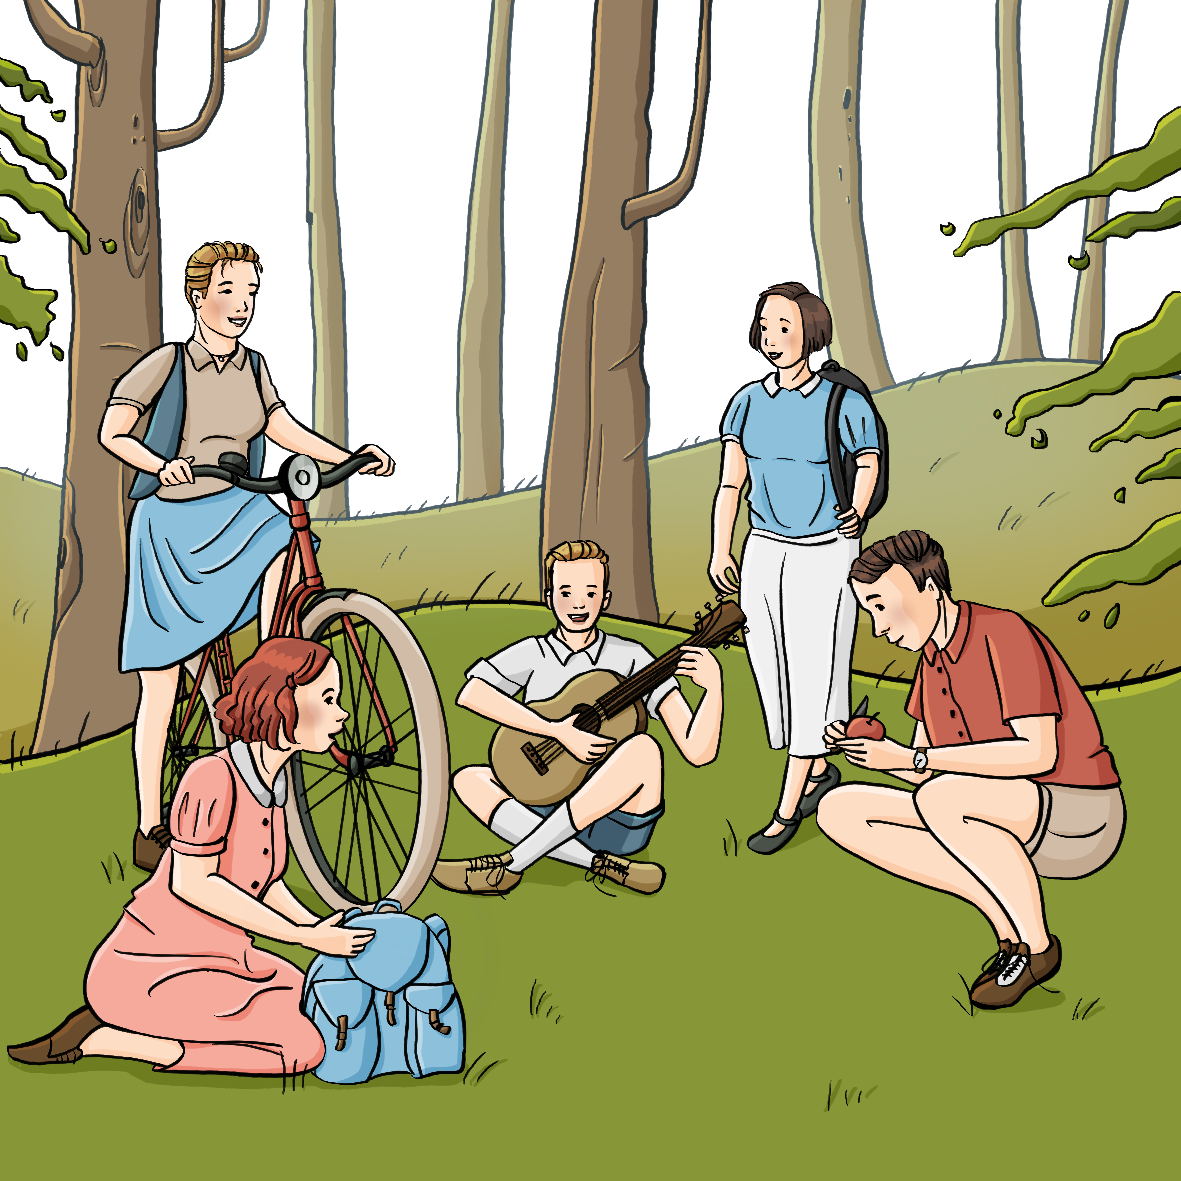 Eine Gruppe Jugendliche in Kleidung der 40er Jahre auf einer Waldlichtung. Sie haben Rucksäcke dabei. Ein Mädchen hält ein Fahrrad, ein Junge spielt Gitarre, ein Junge schält einen Apfel.